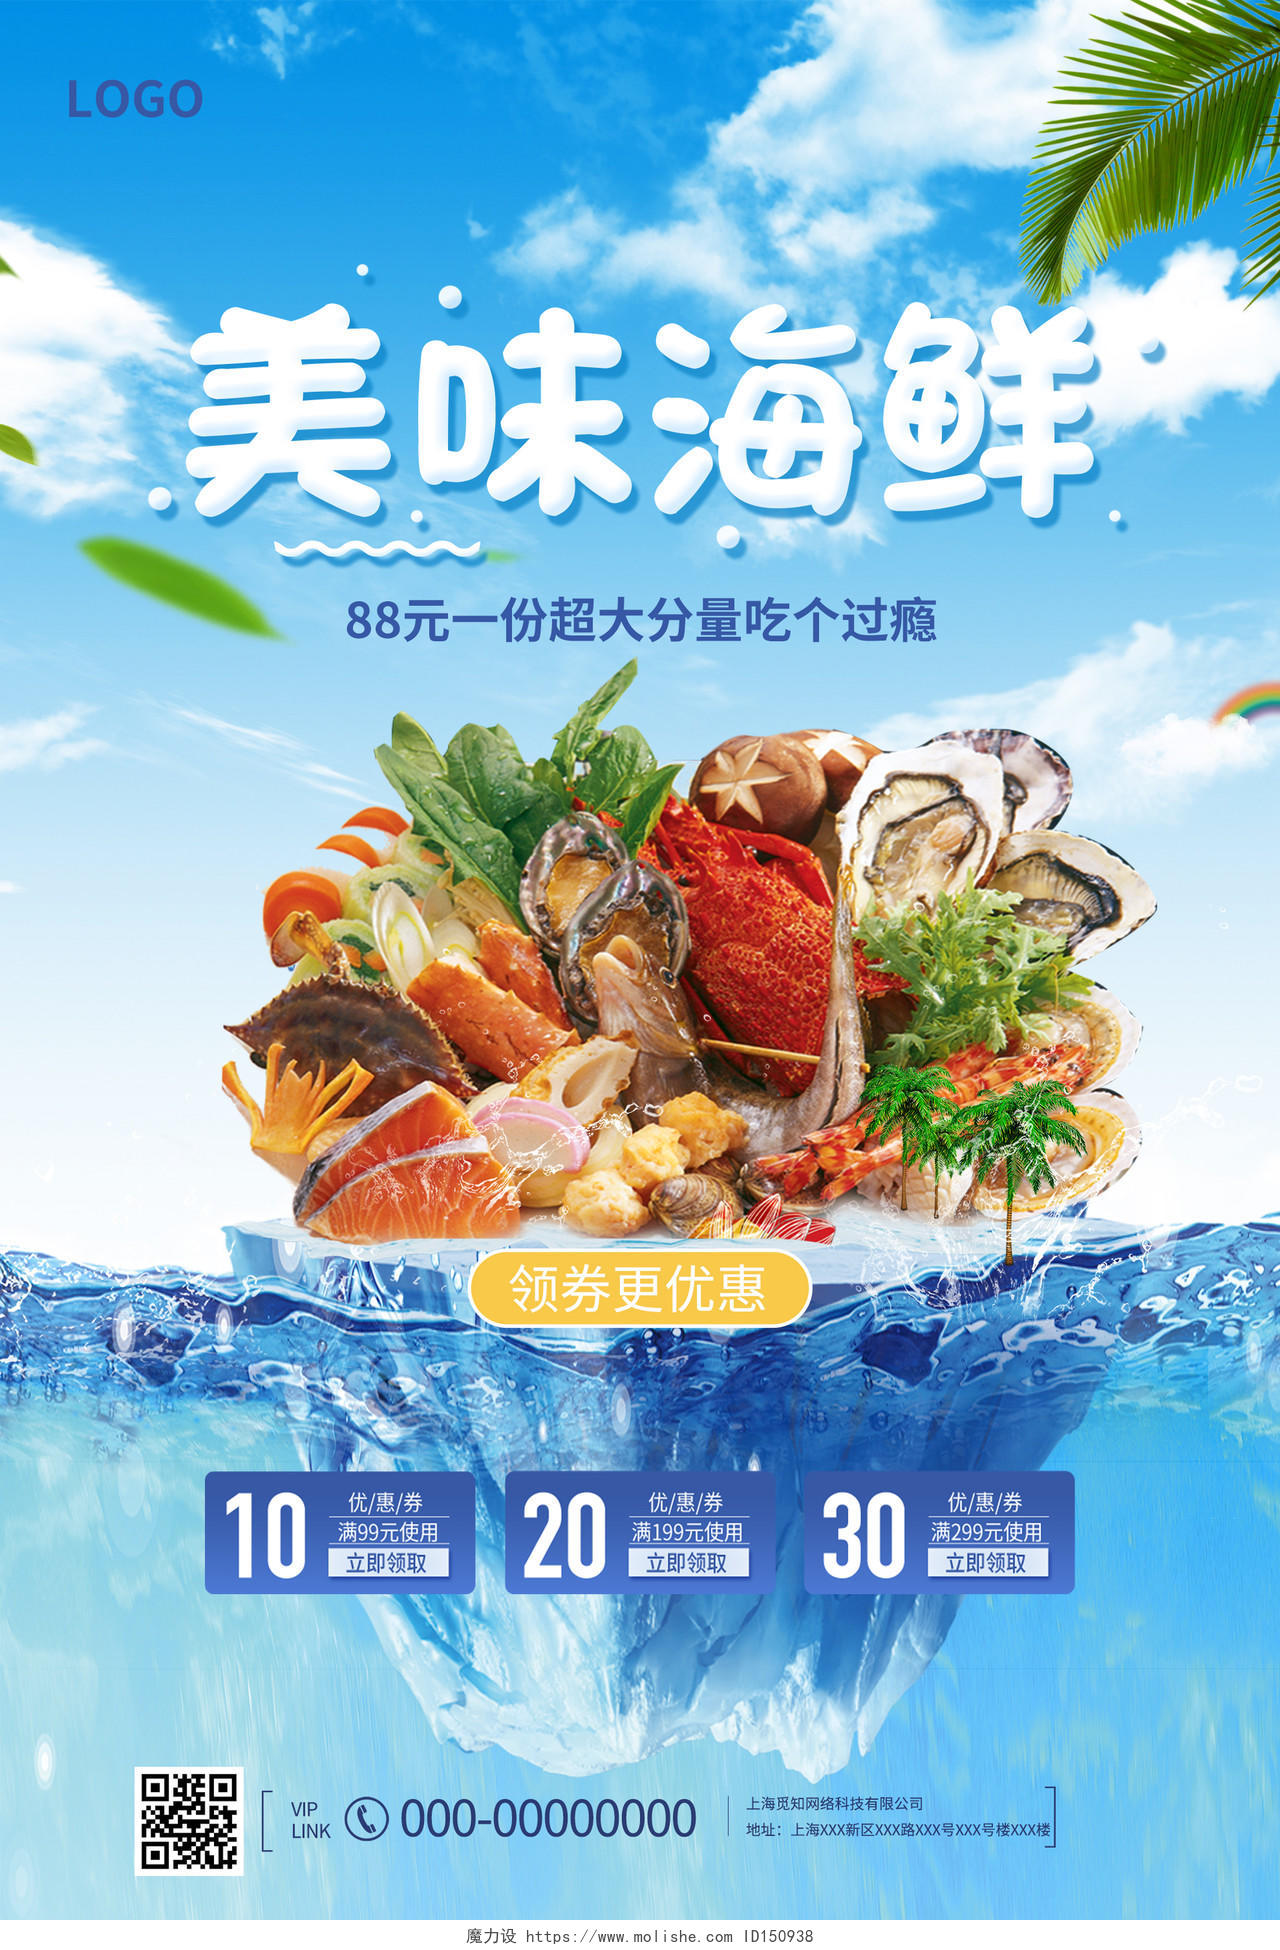 蓝色简约美味海鲜促销活动海报创意合成海鲜美食宣传海报